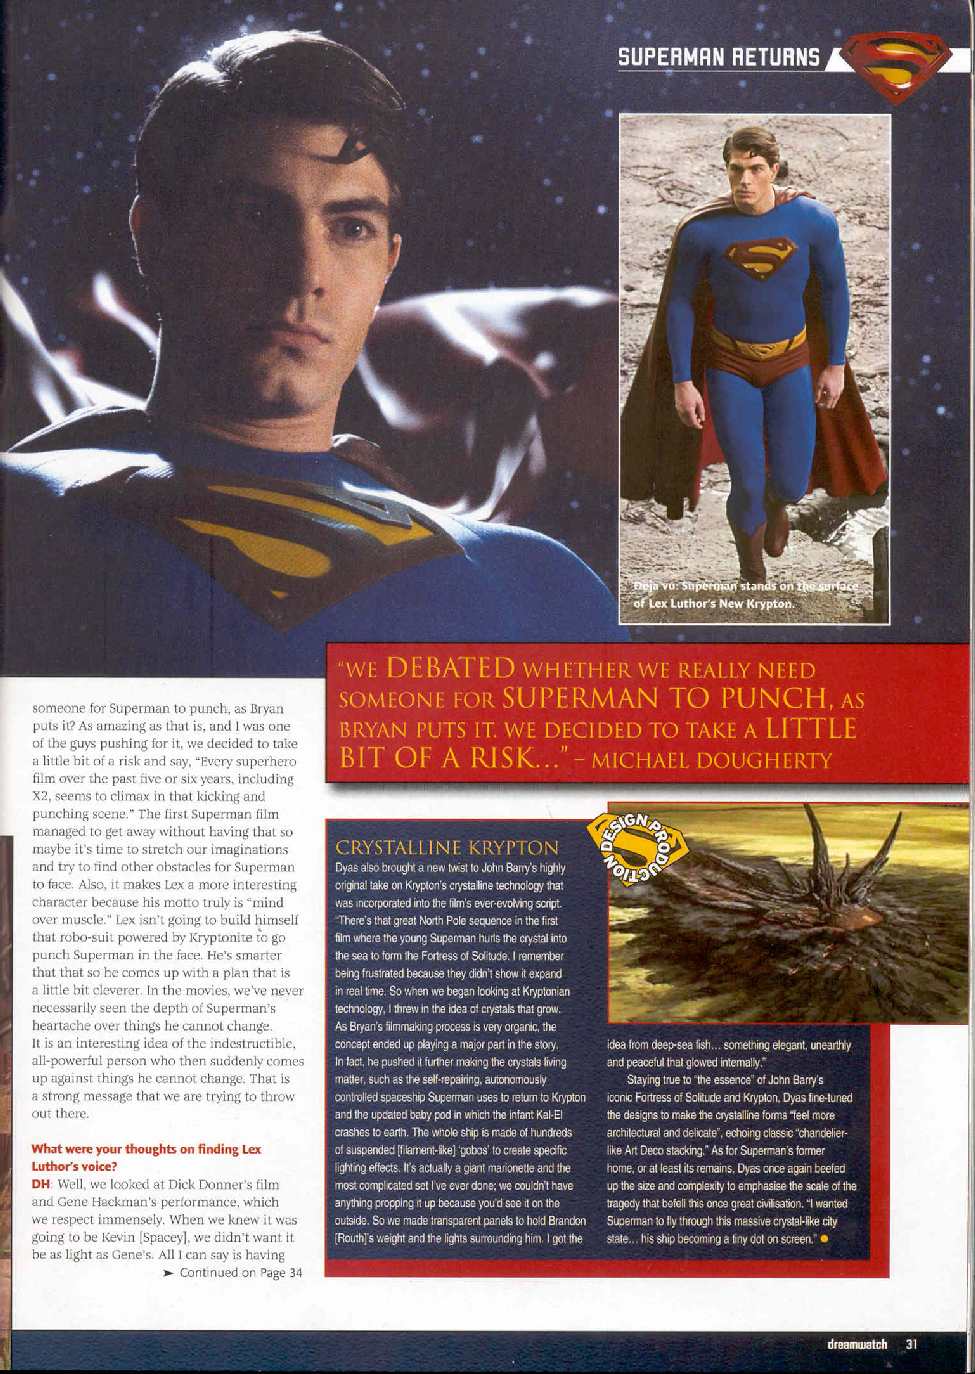 SUPERMAN RETURNS IN DREAMWATCH 22